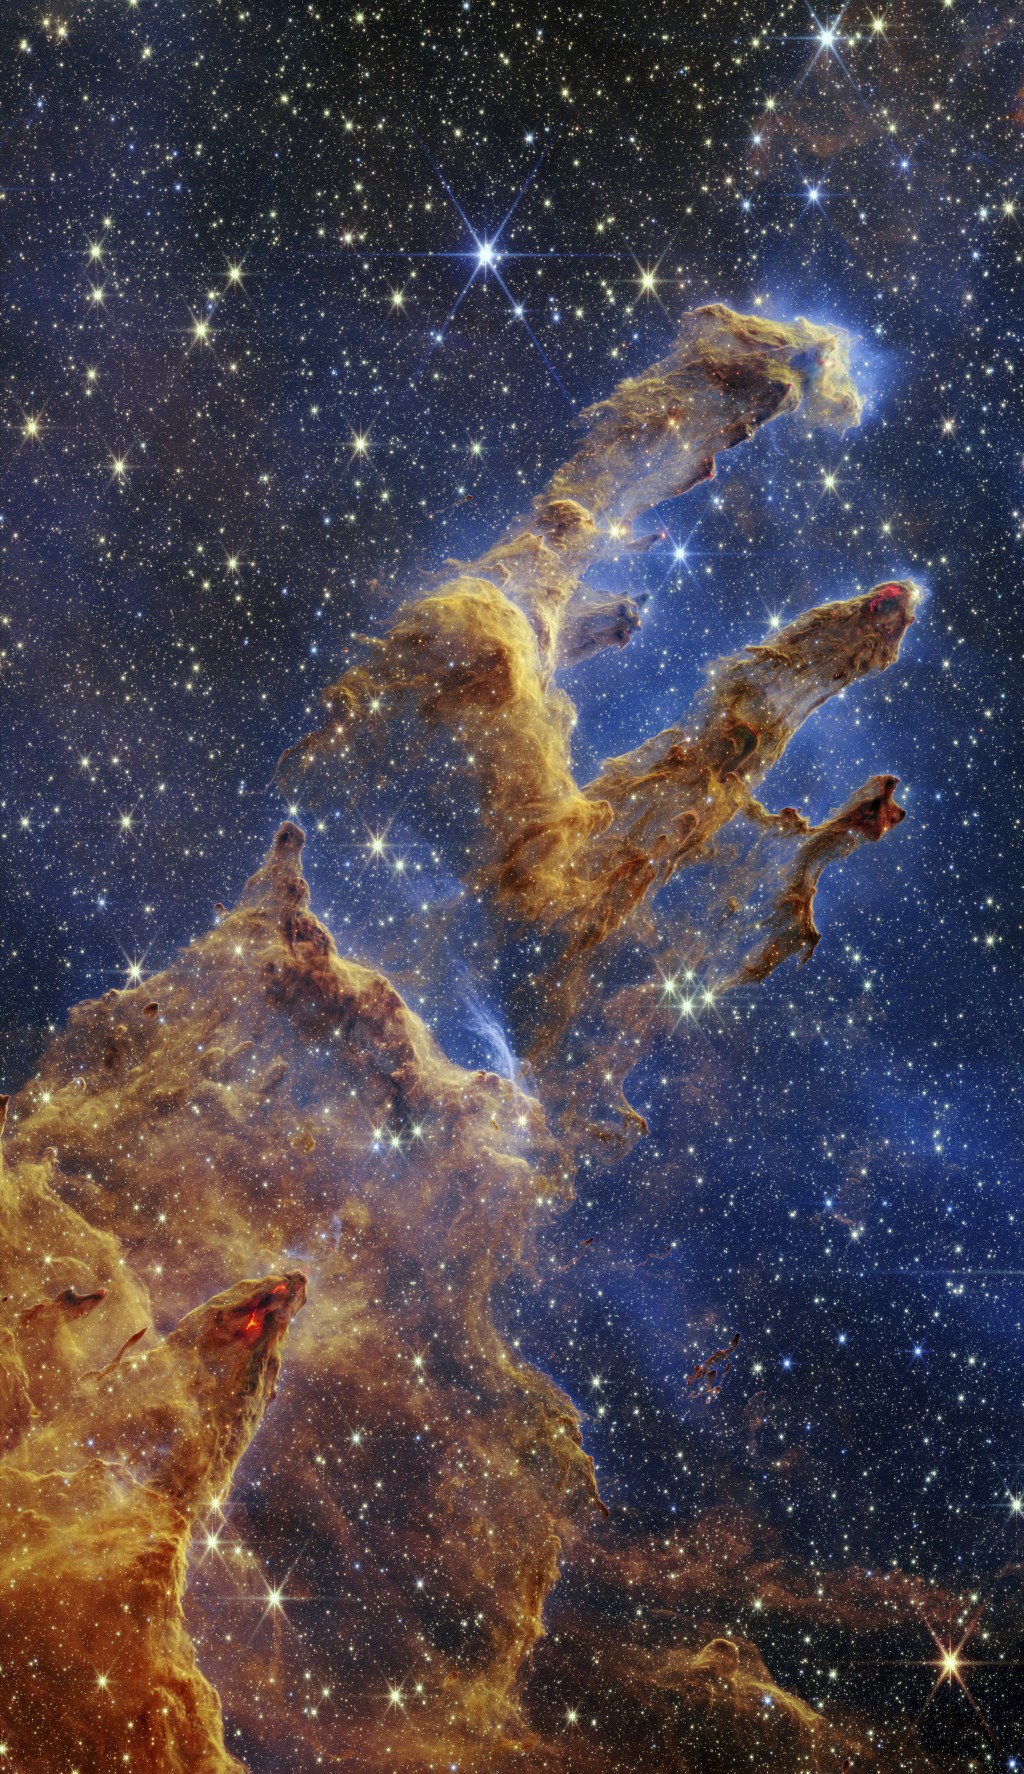 韋伯太空望遠鏡拍下著名「創生之柱」高度精細新影像。AP